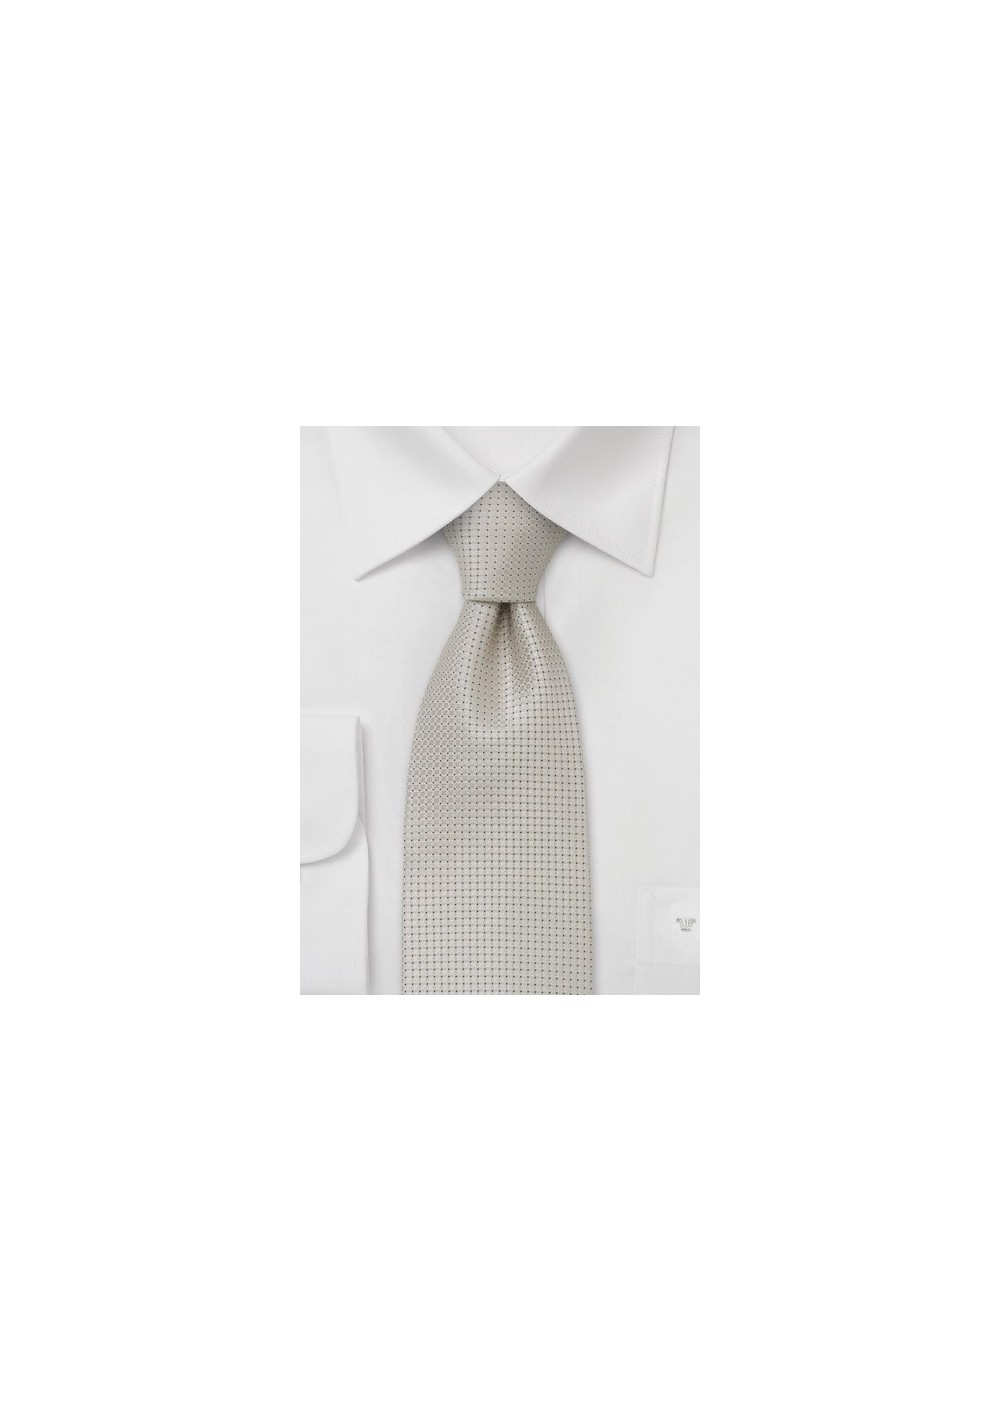 Wedding tie  -  Festive silk tie in platinum silver